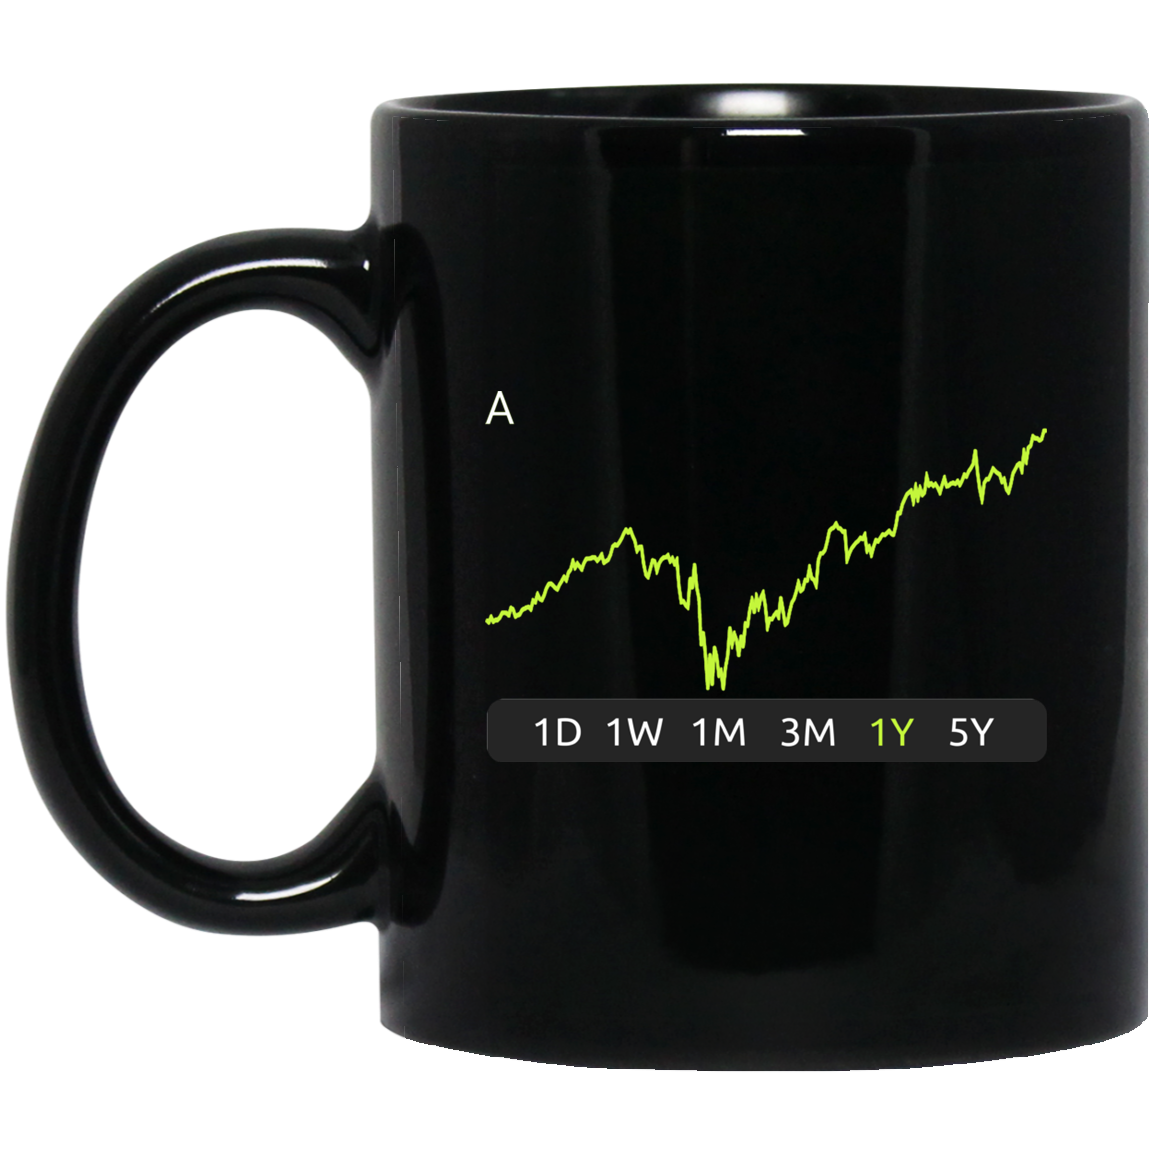 A Stock 1y Mug